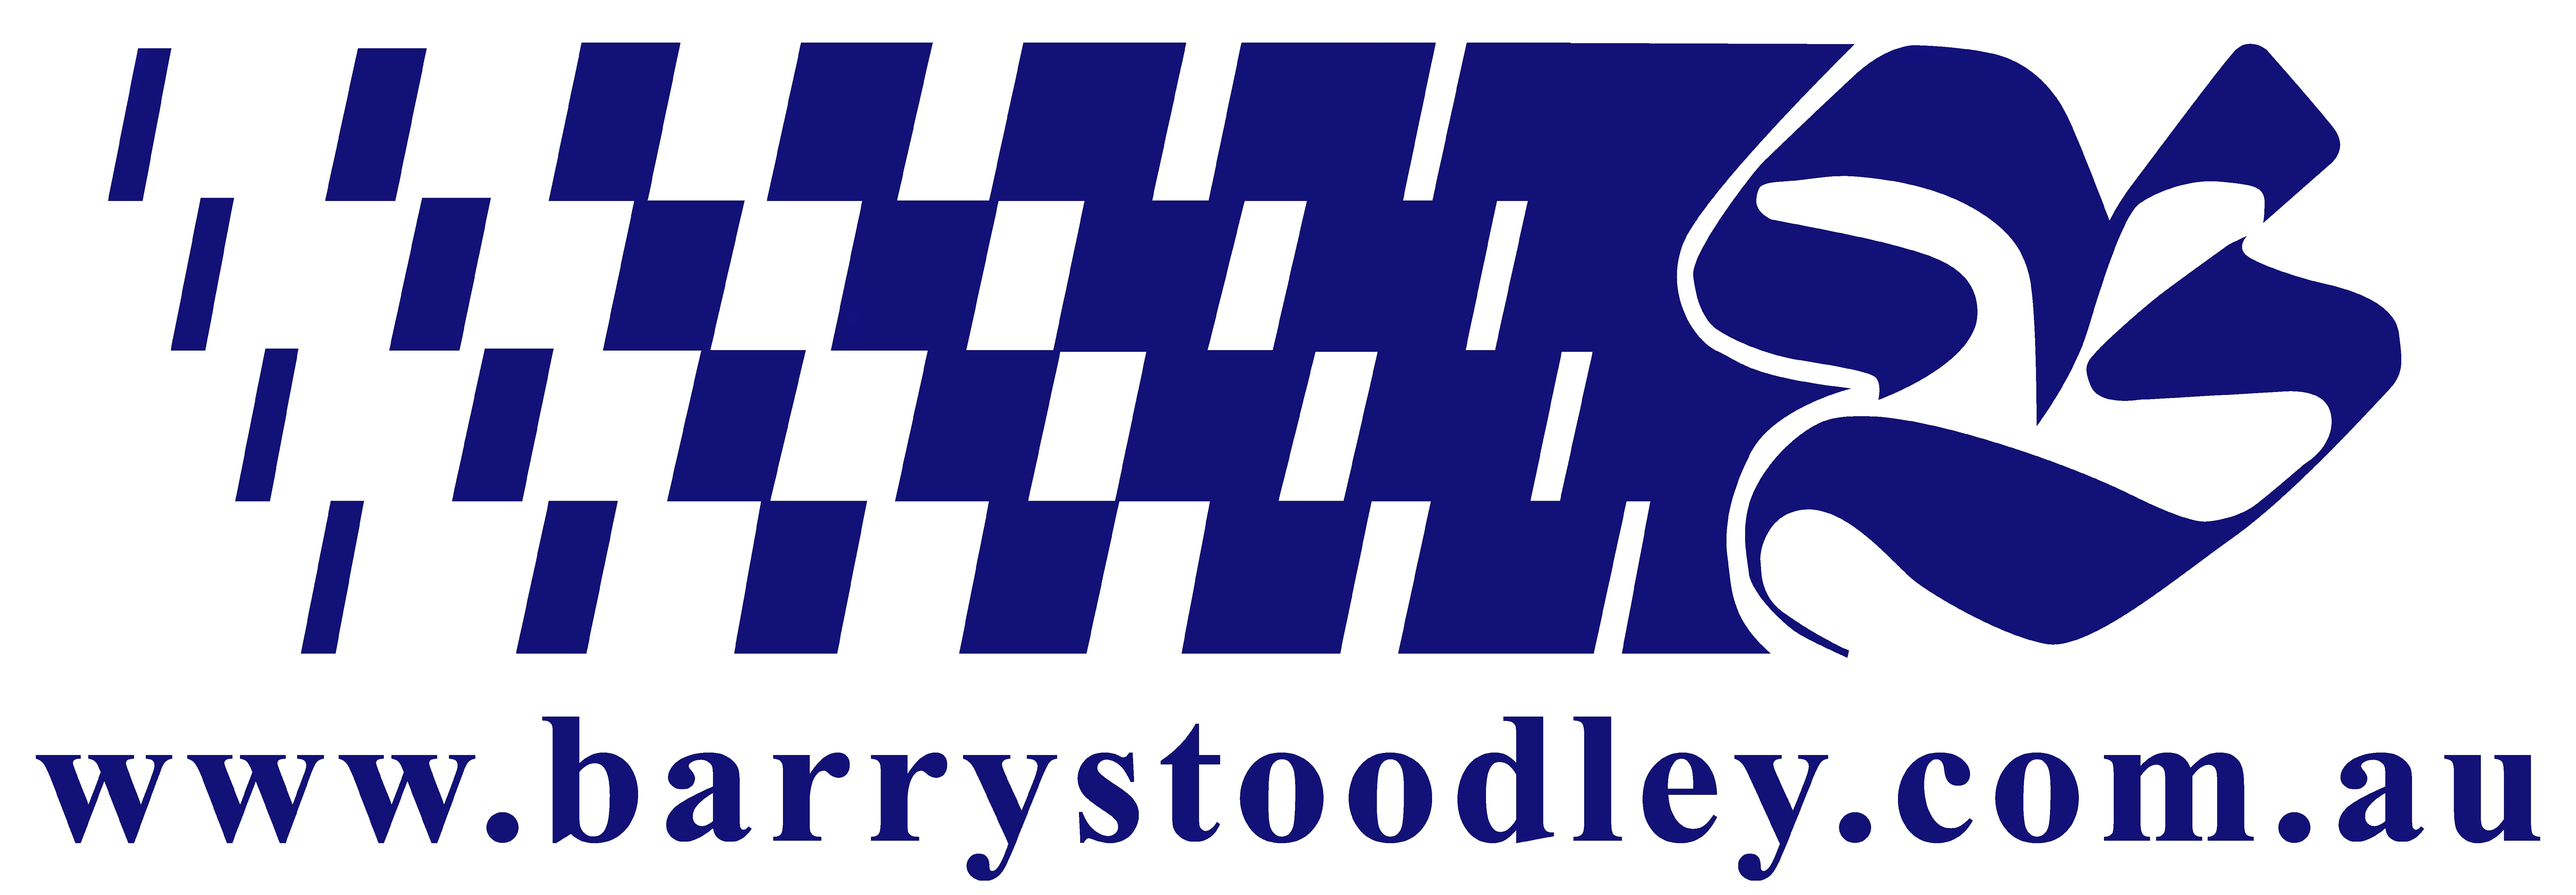 Barry Stoodley Pty Ltd